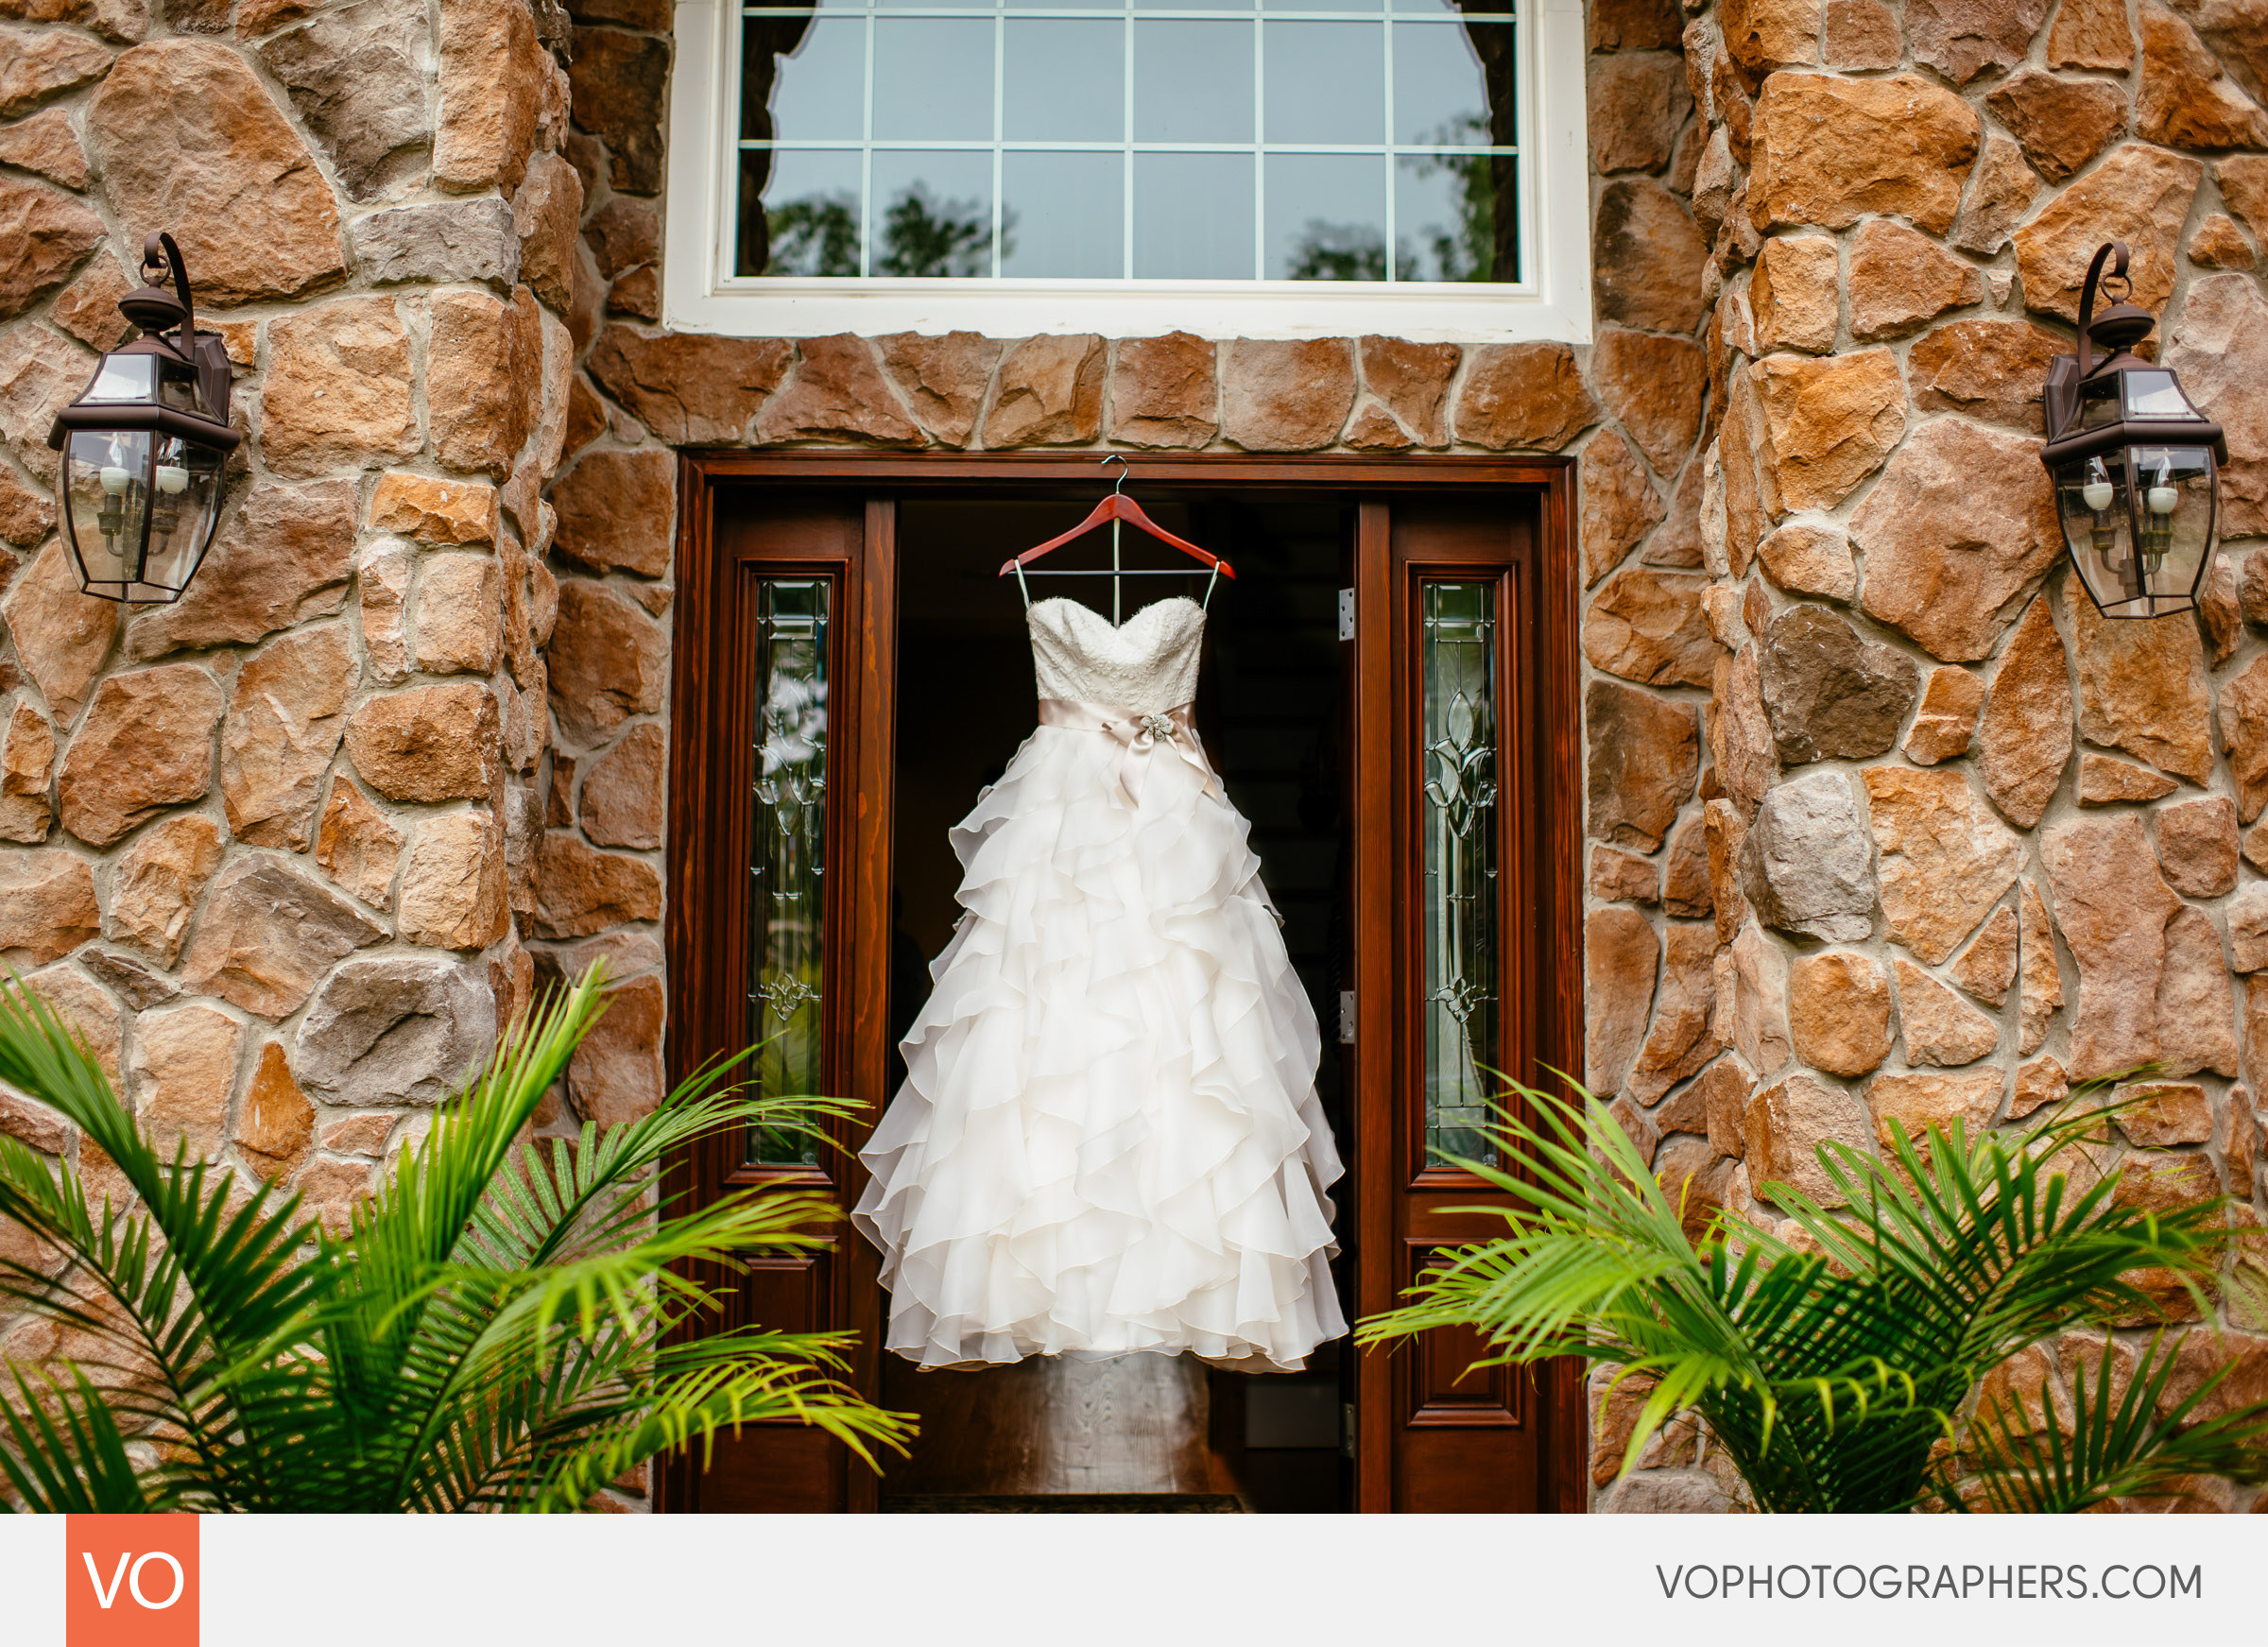 Wedding dress hanging in a doorway